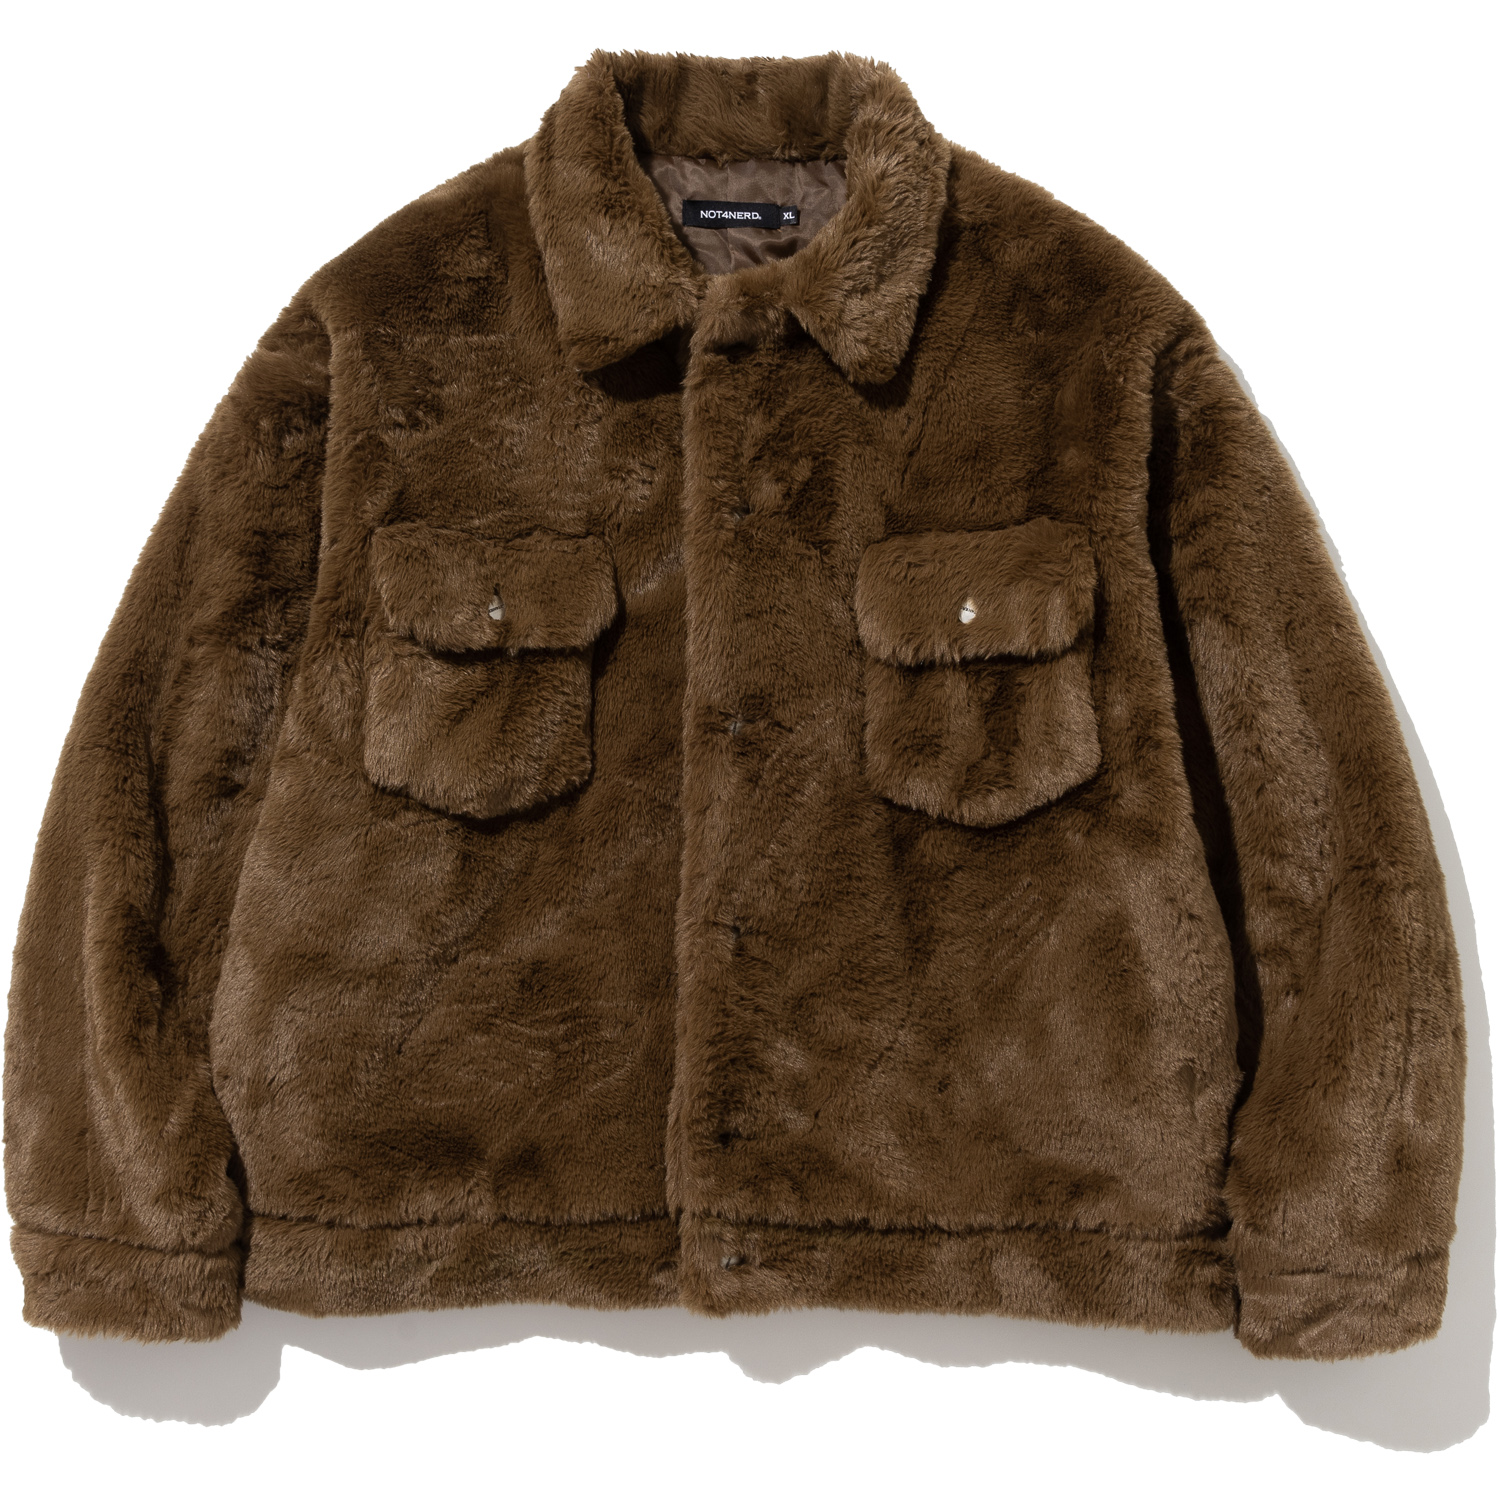 Fur Trucker Jacket - Brown,NOT4NERD